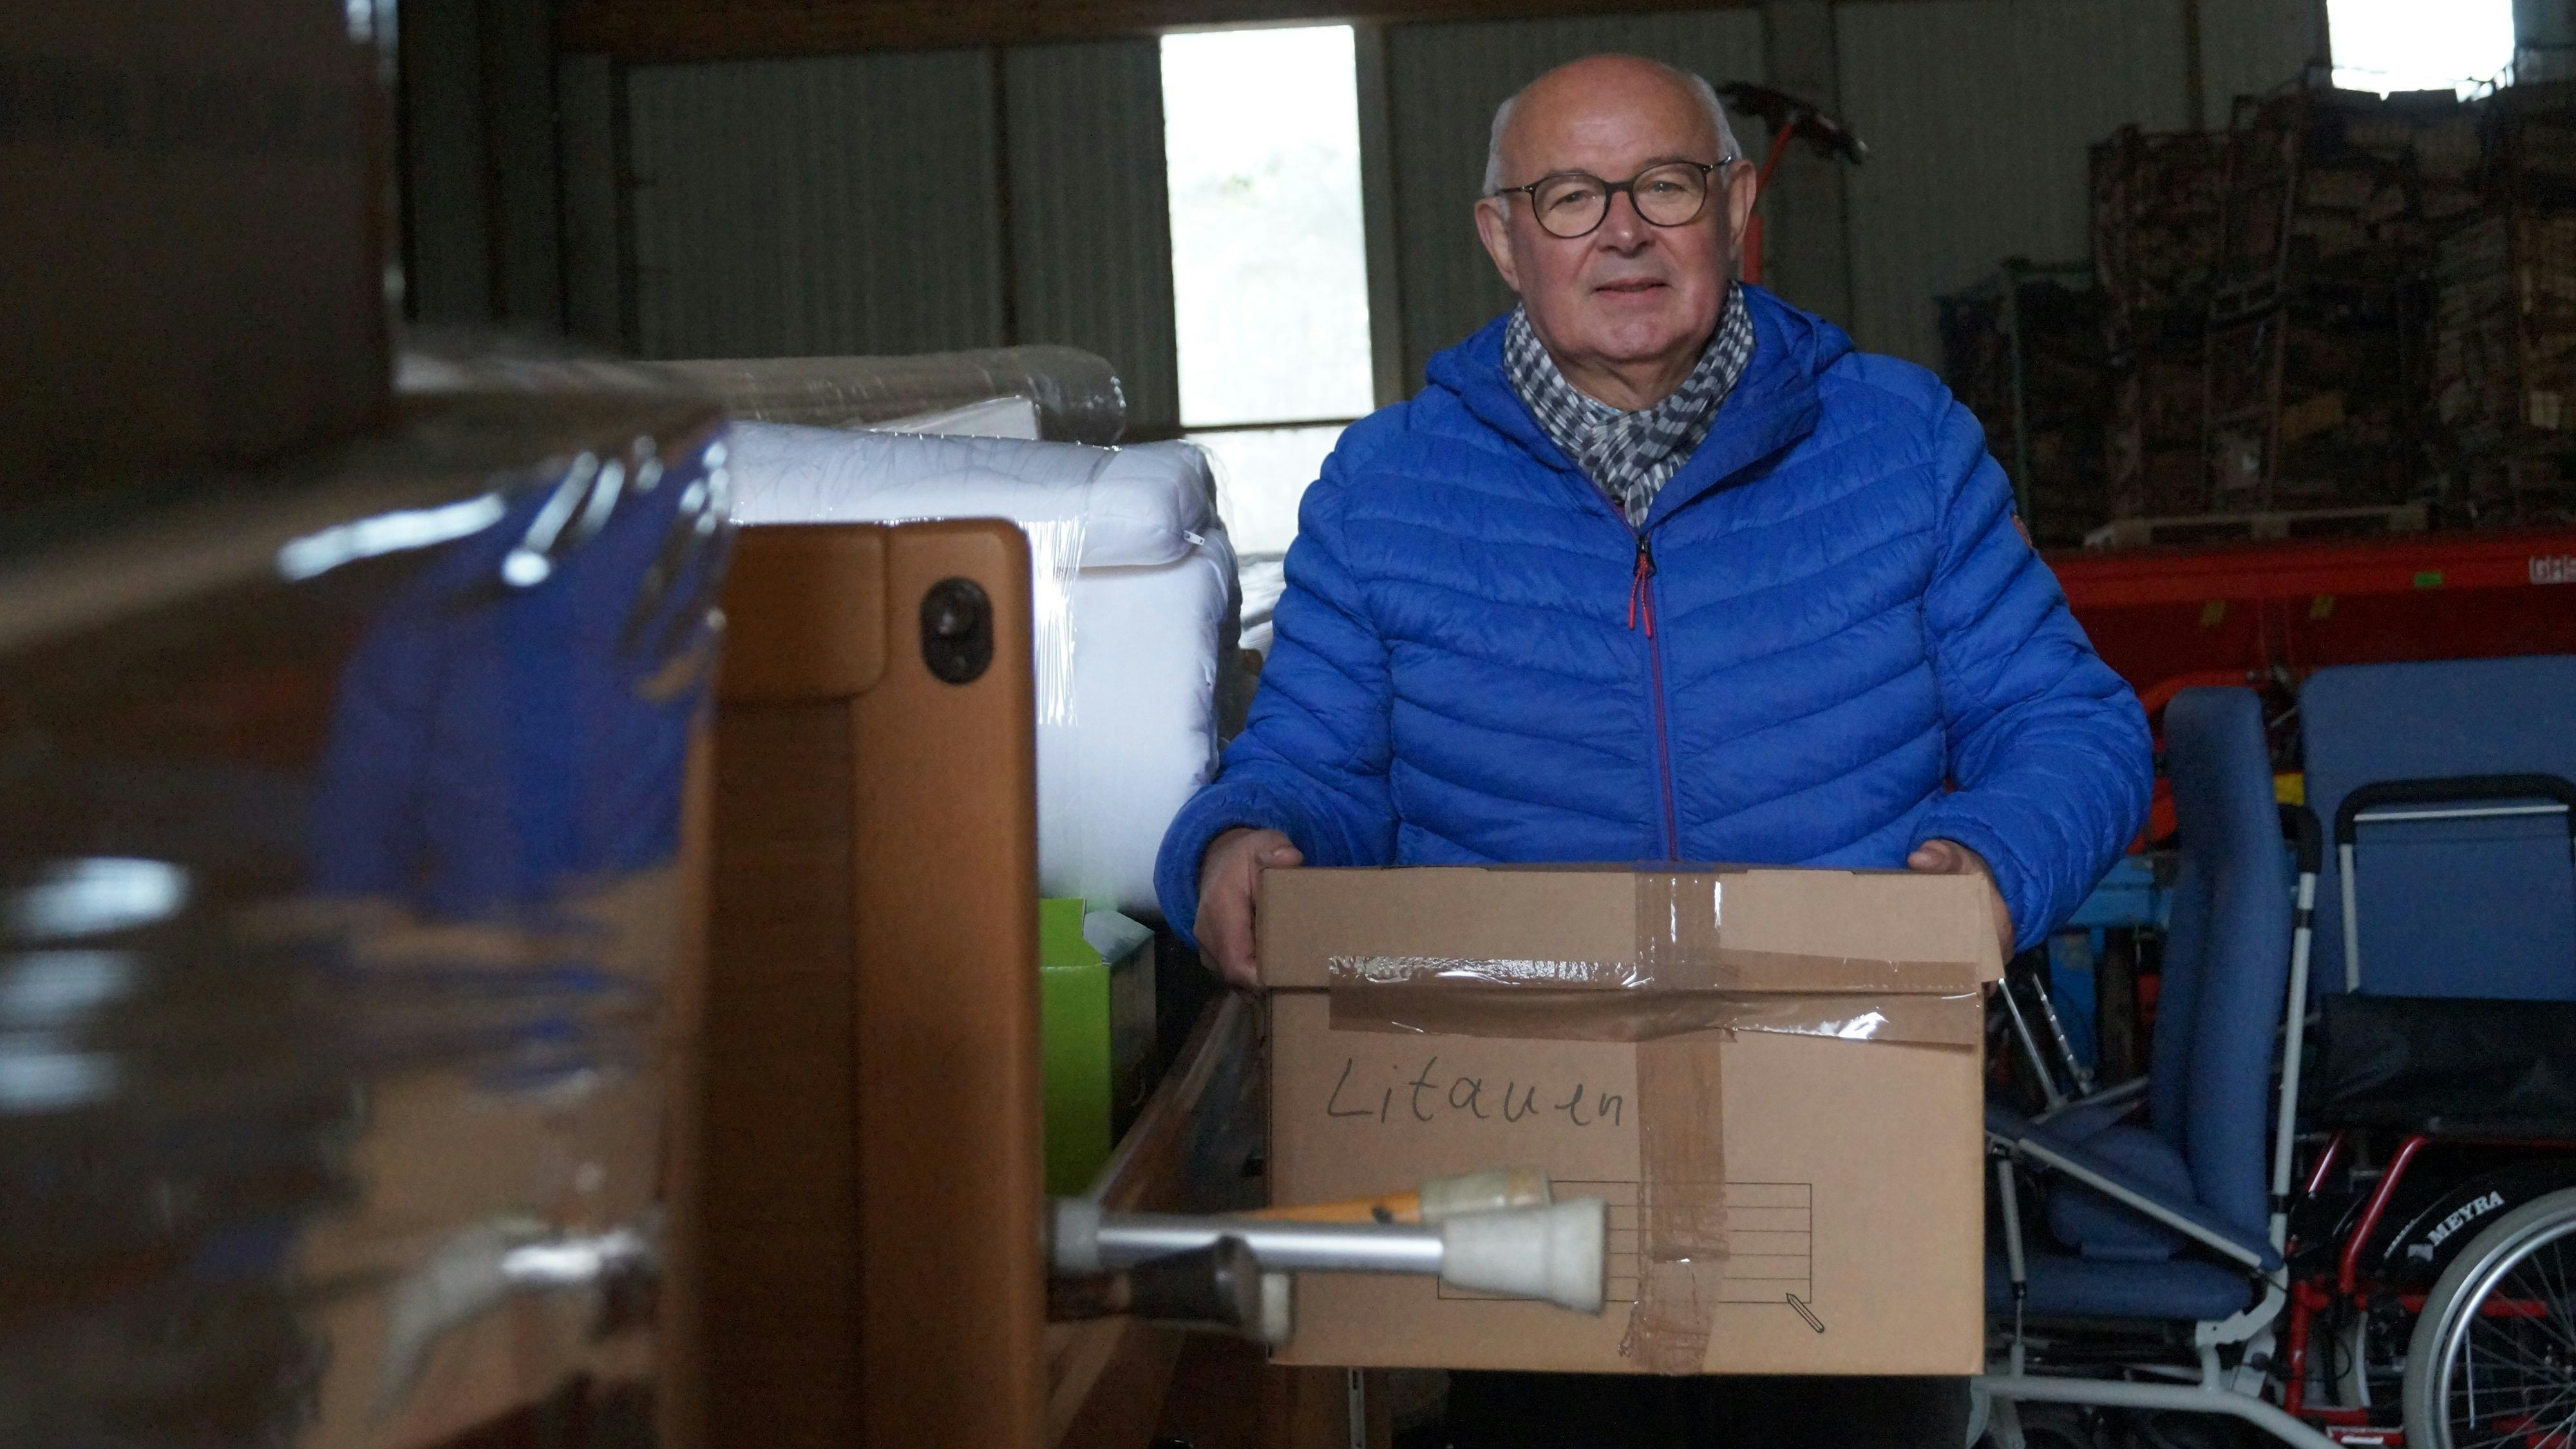 Zahlreiche Kisten sind gepackt und bereit für die Reise: Alfons Hoping hat wieder viele Spenden gesammelt, um die Menschen in Litauen zu unterstützen. Foto: C. Meyer